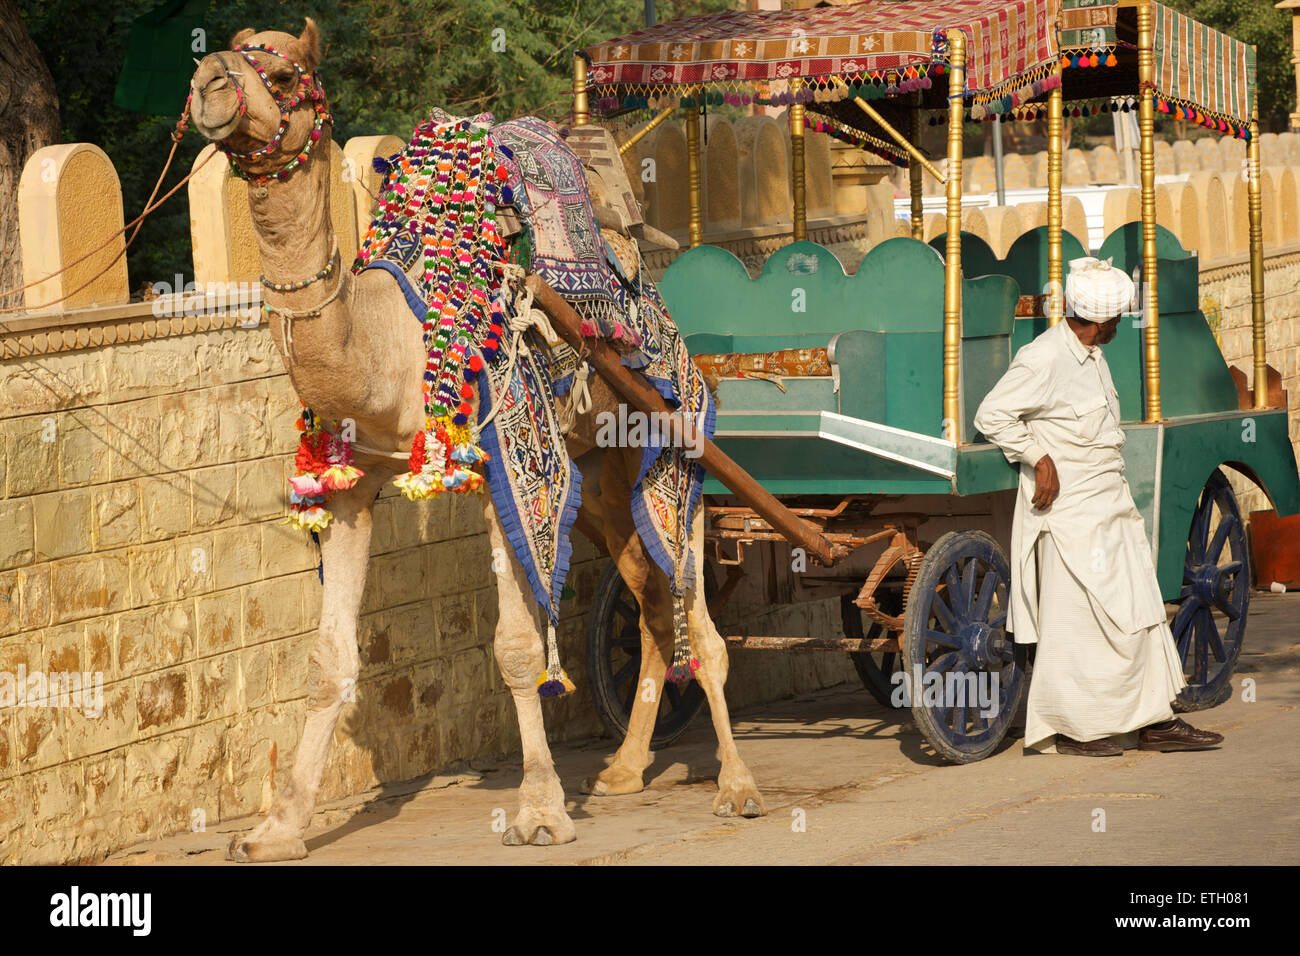 indian-man-offering-camel-drawn-cart-rides-gadi-sagar-gadisar-lake-ETH081.jpg